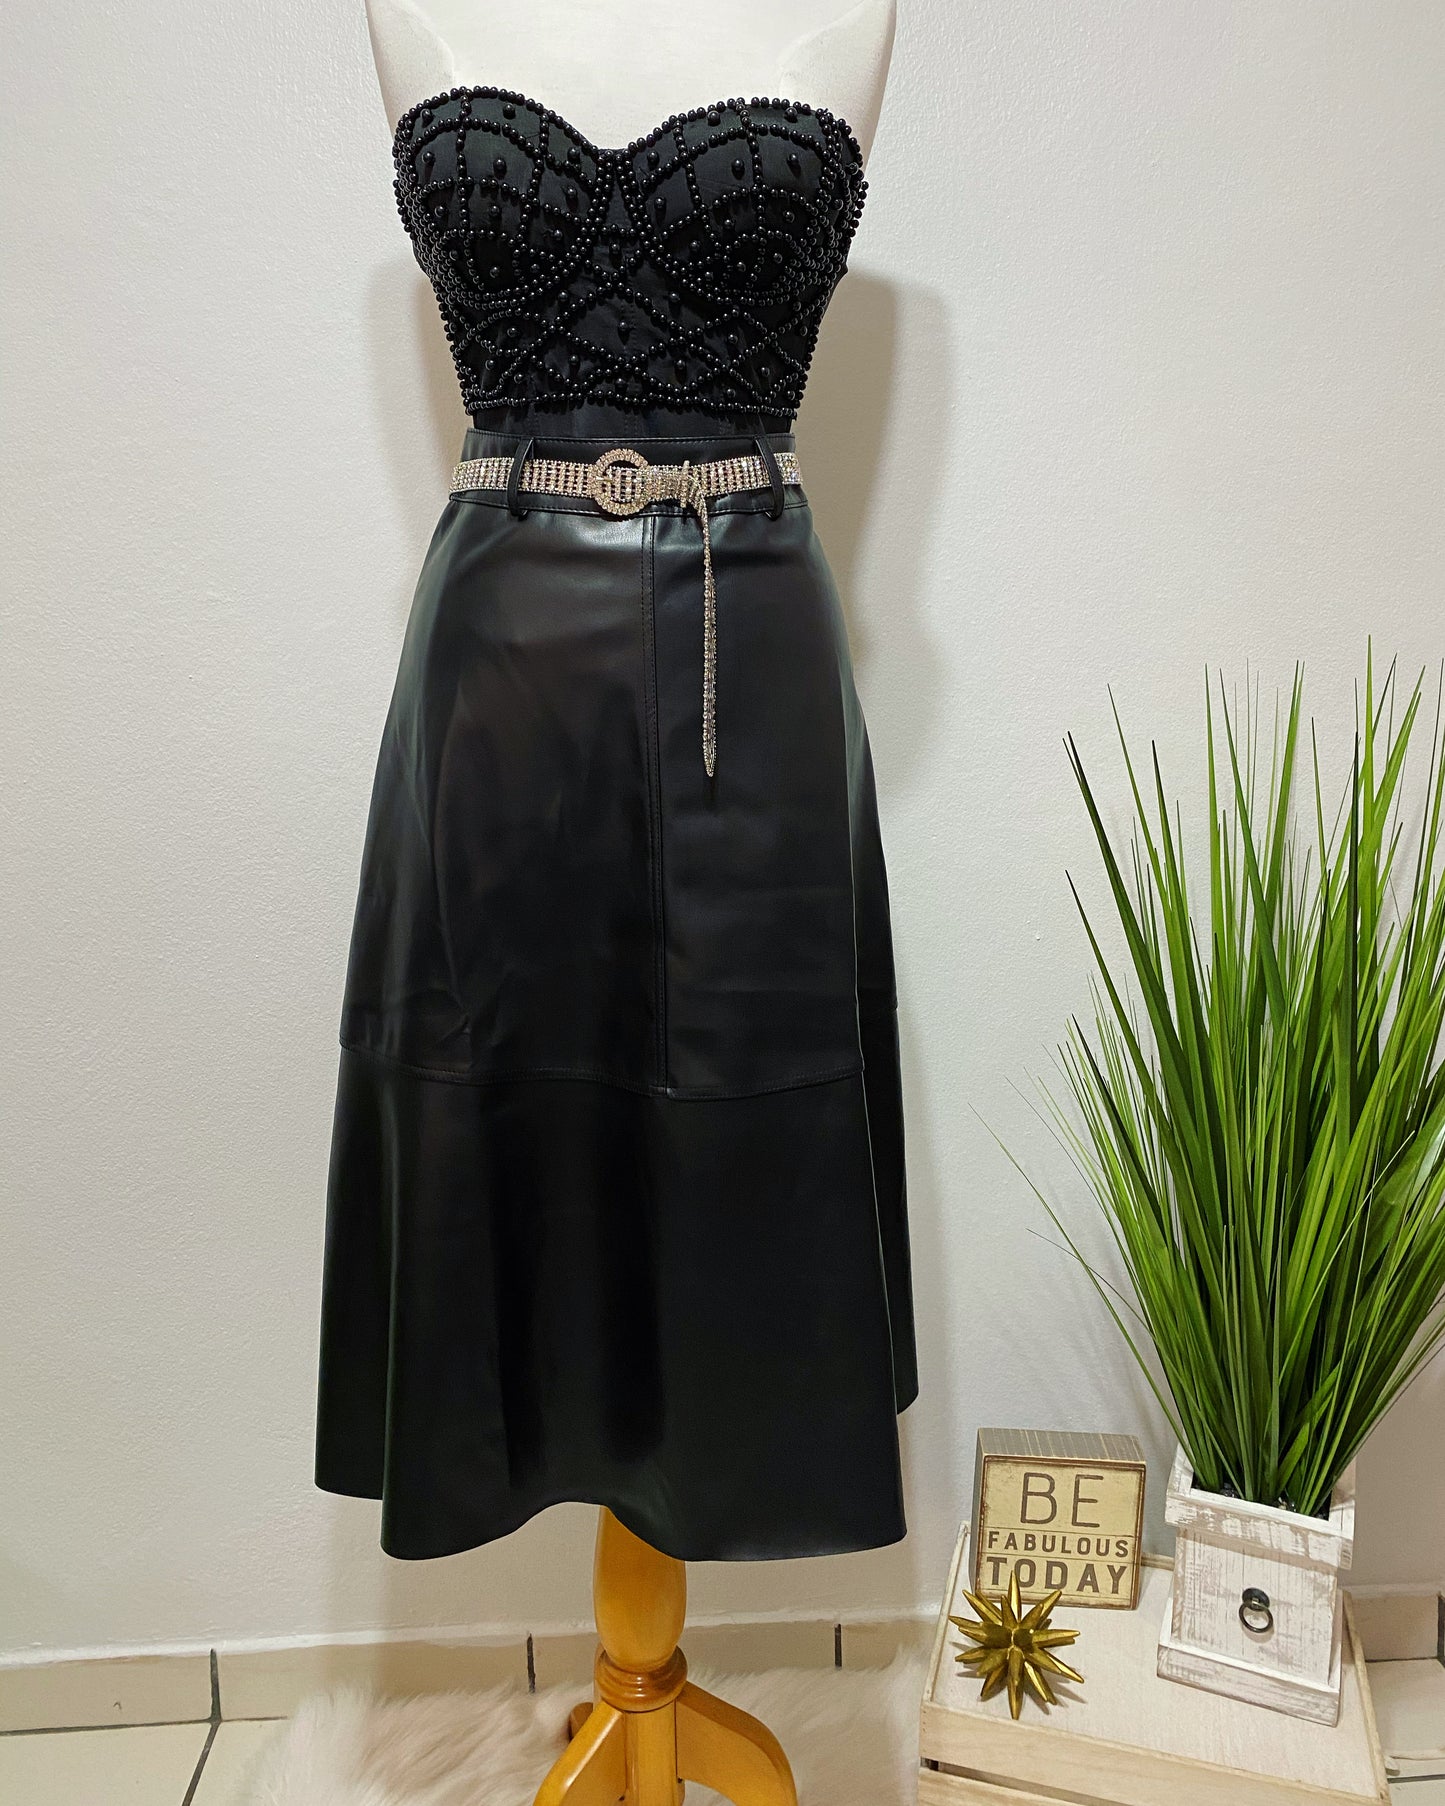 Leather waist skirt